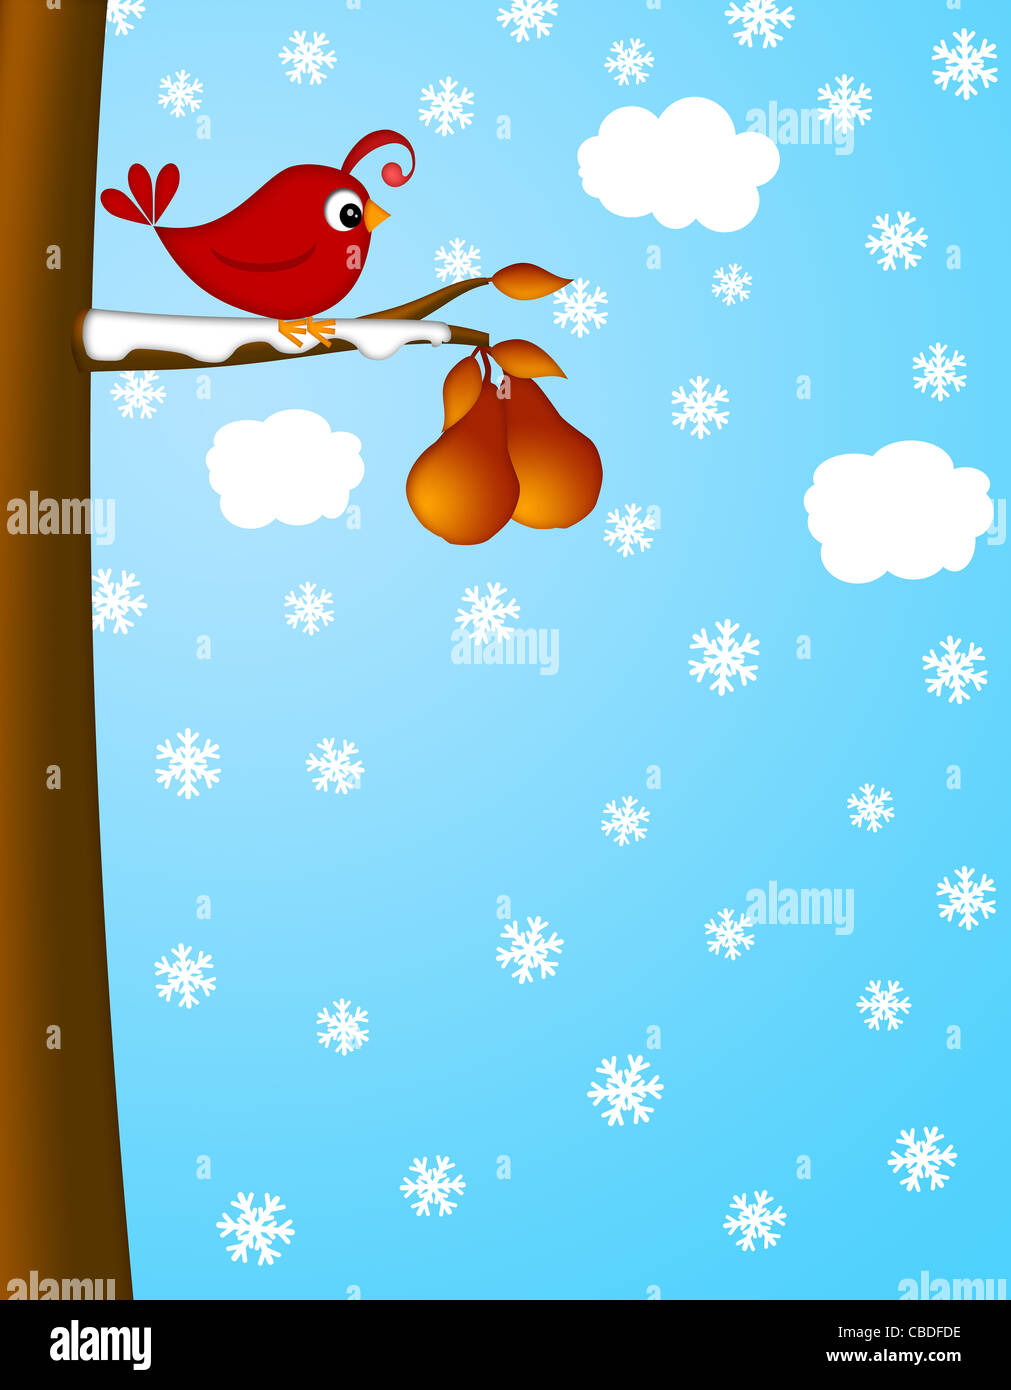 Weihnachten-Rebhuhn auf eine Birne Baum Winterszene Illustration Stockfoto